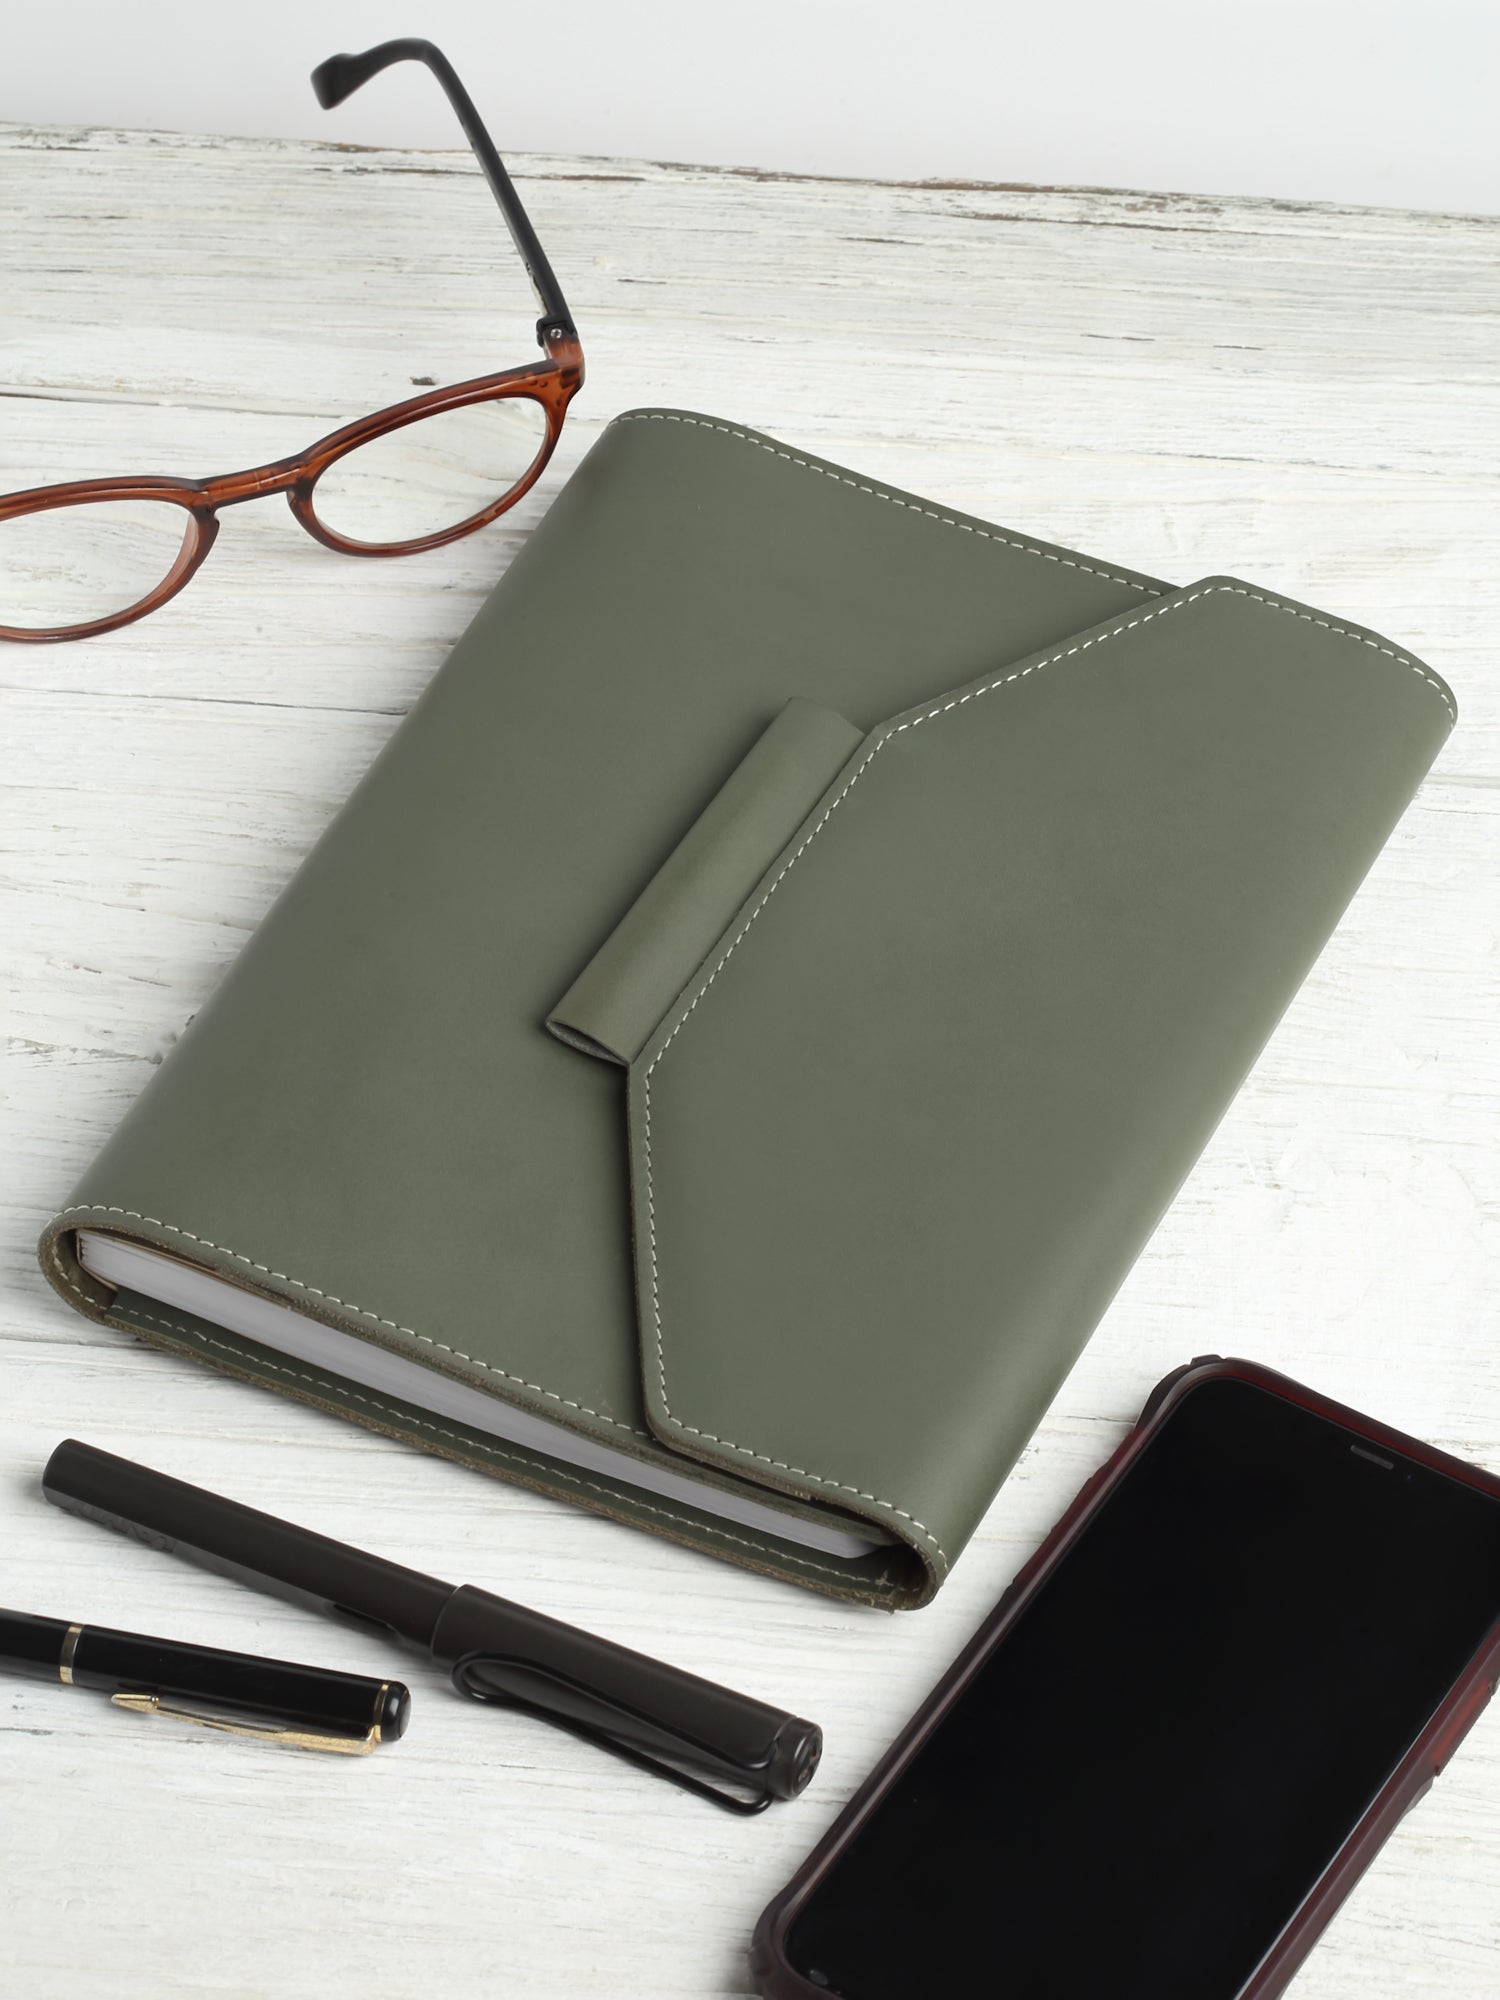 Essential Notebook Organizer